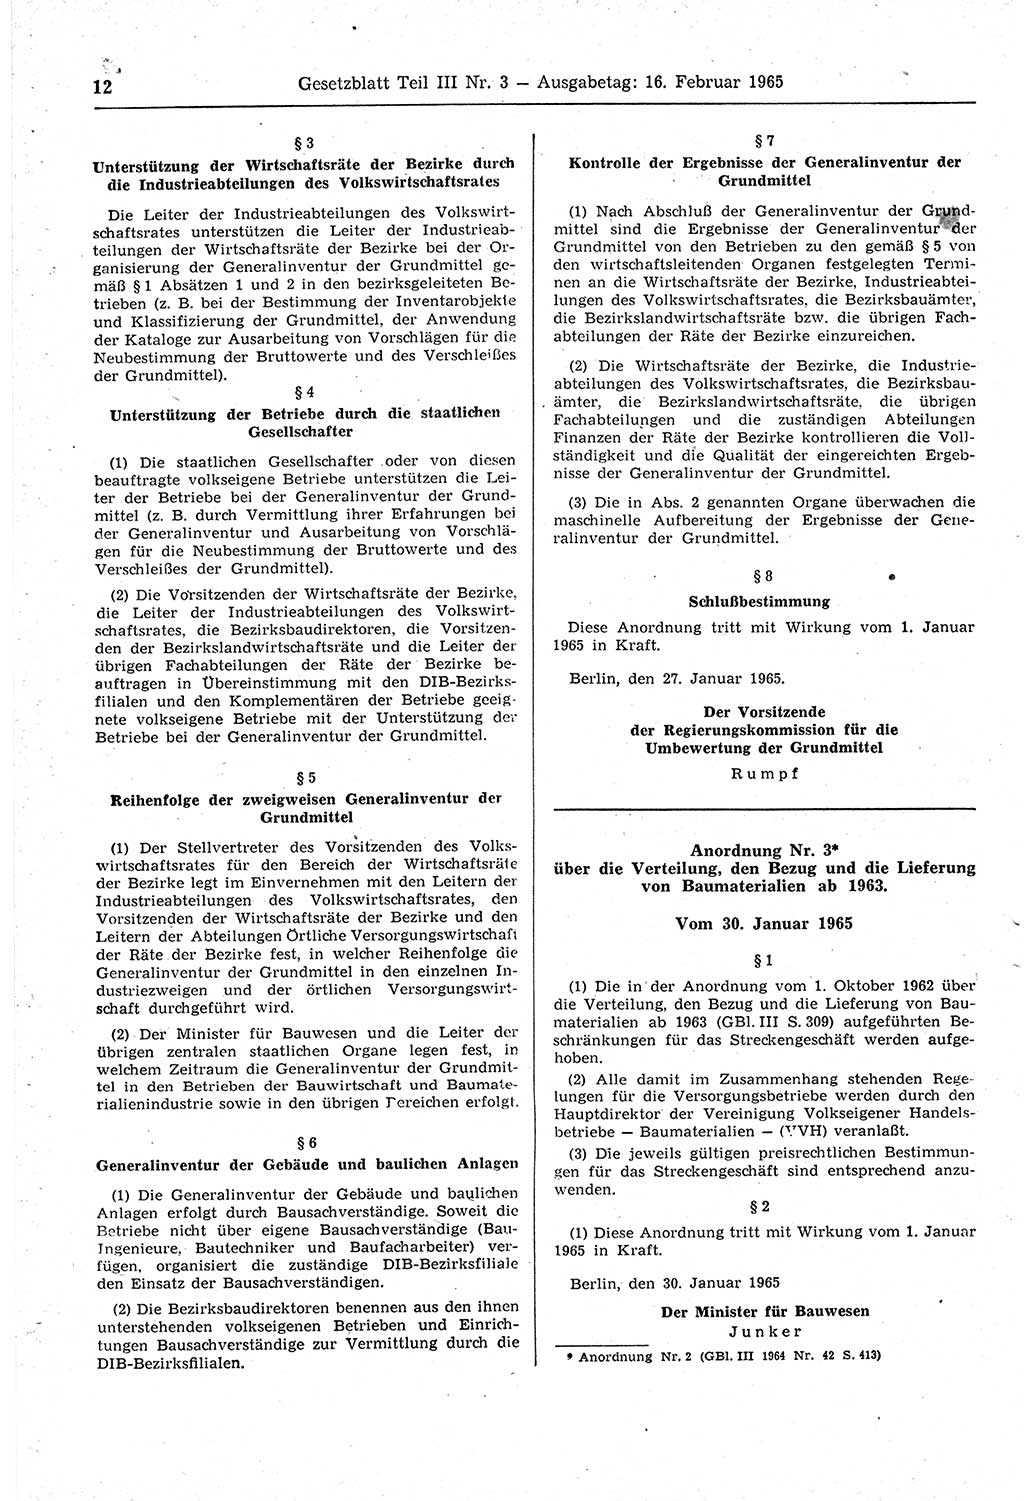 Gesetzblatt (GBl.) der Deutschen Demokratischen Republik (DDR) Teil ⅠⅠⅠ 1965, Seite 12 (GBl. DDR ⅠⅠⅠ 1965, S. 12)